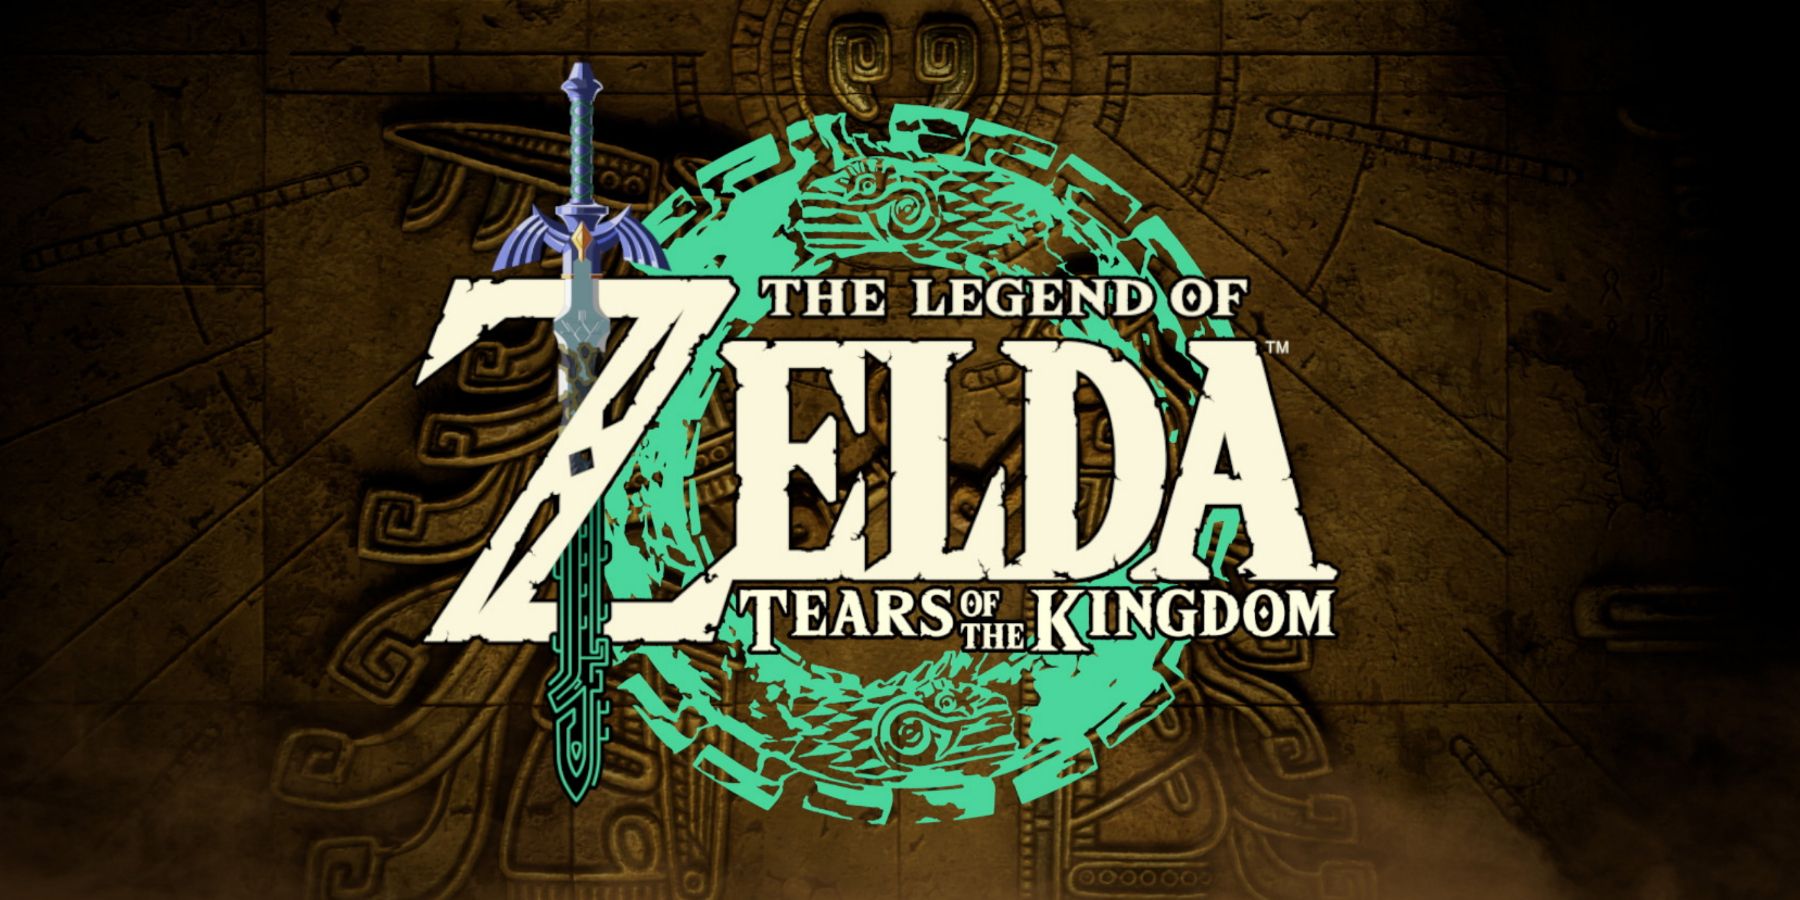 tears of the kingdom logo image